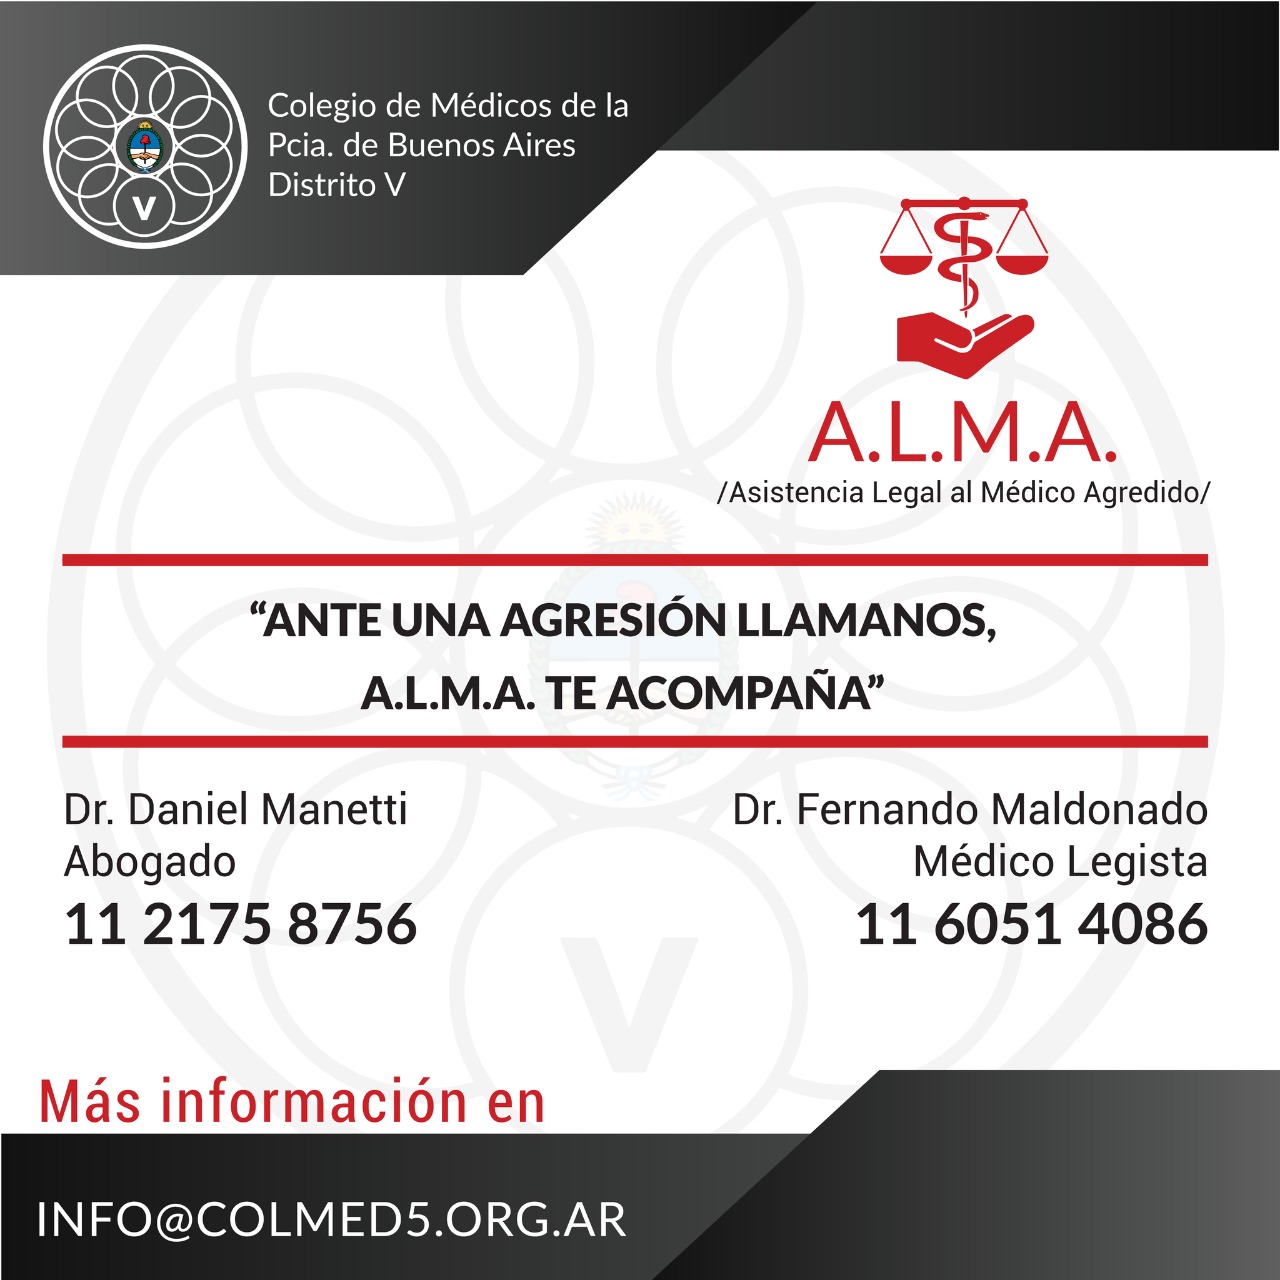 ALMA – Asistencia Legal al Médico Agredido